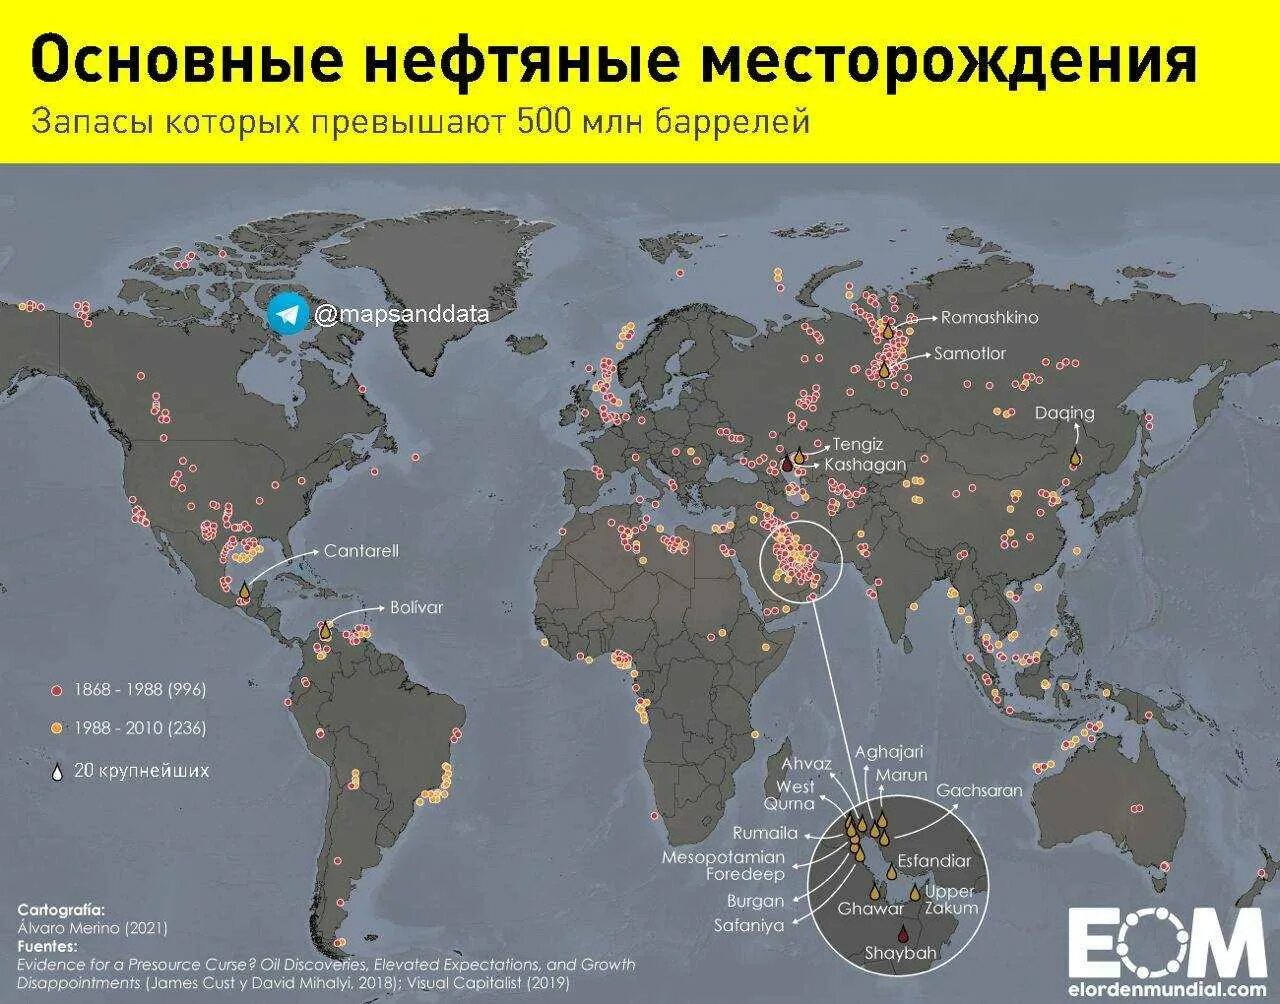 Главные нефтяные страны. Карта месторождений нефти в мире. Основные месторождения нефти в мире на карте.